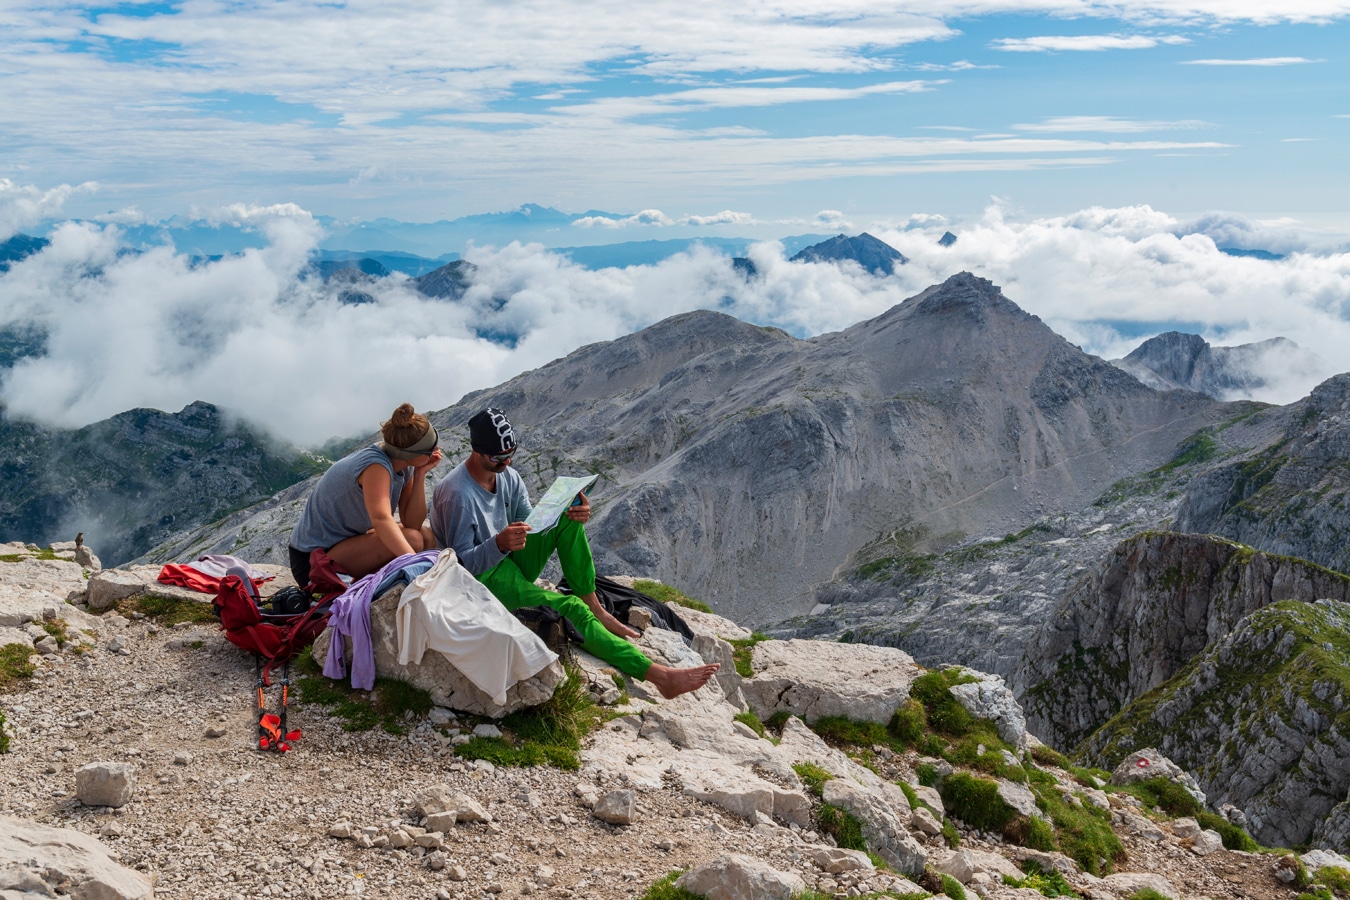 Slovinsko - vrchol Krnu (2244 m n. m.) v Julských Alpách s odpočívajícími turisty